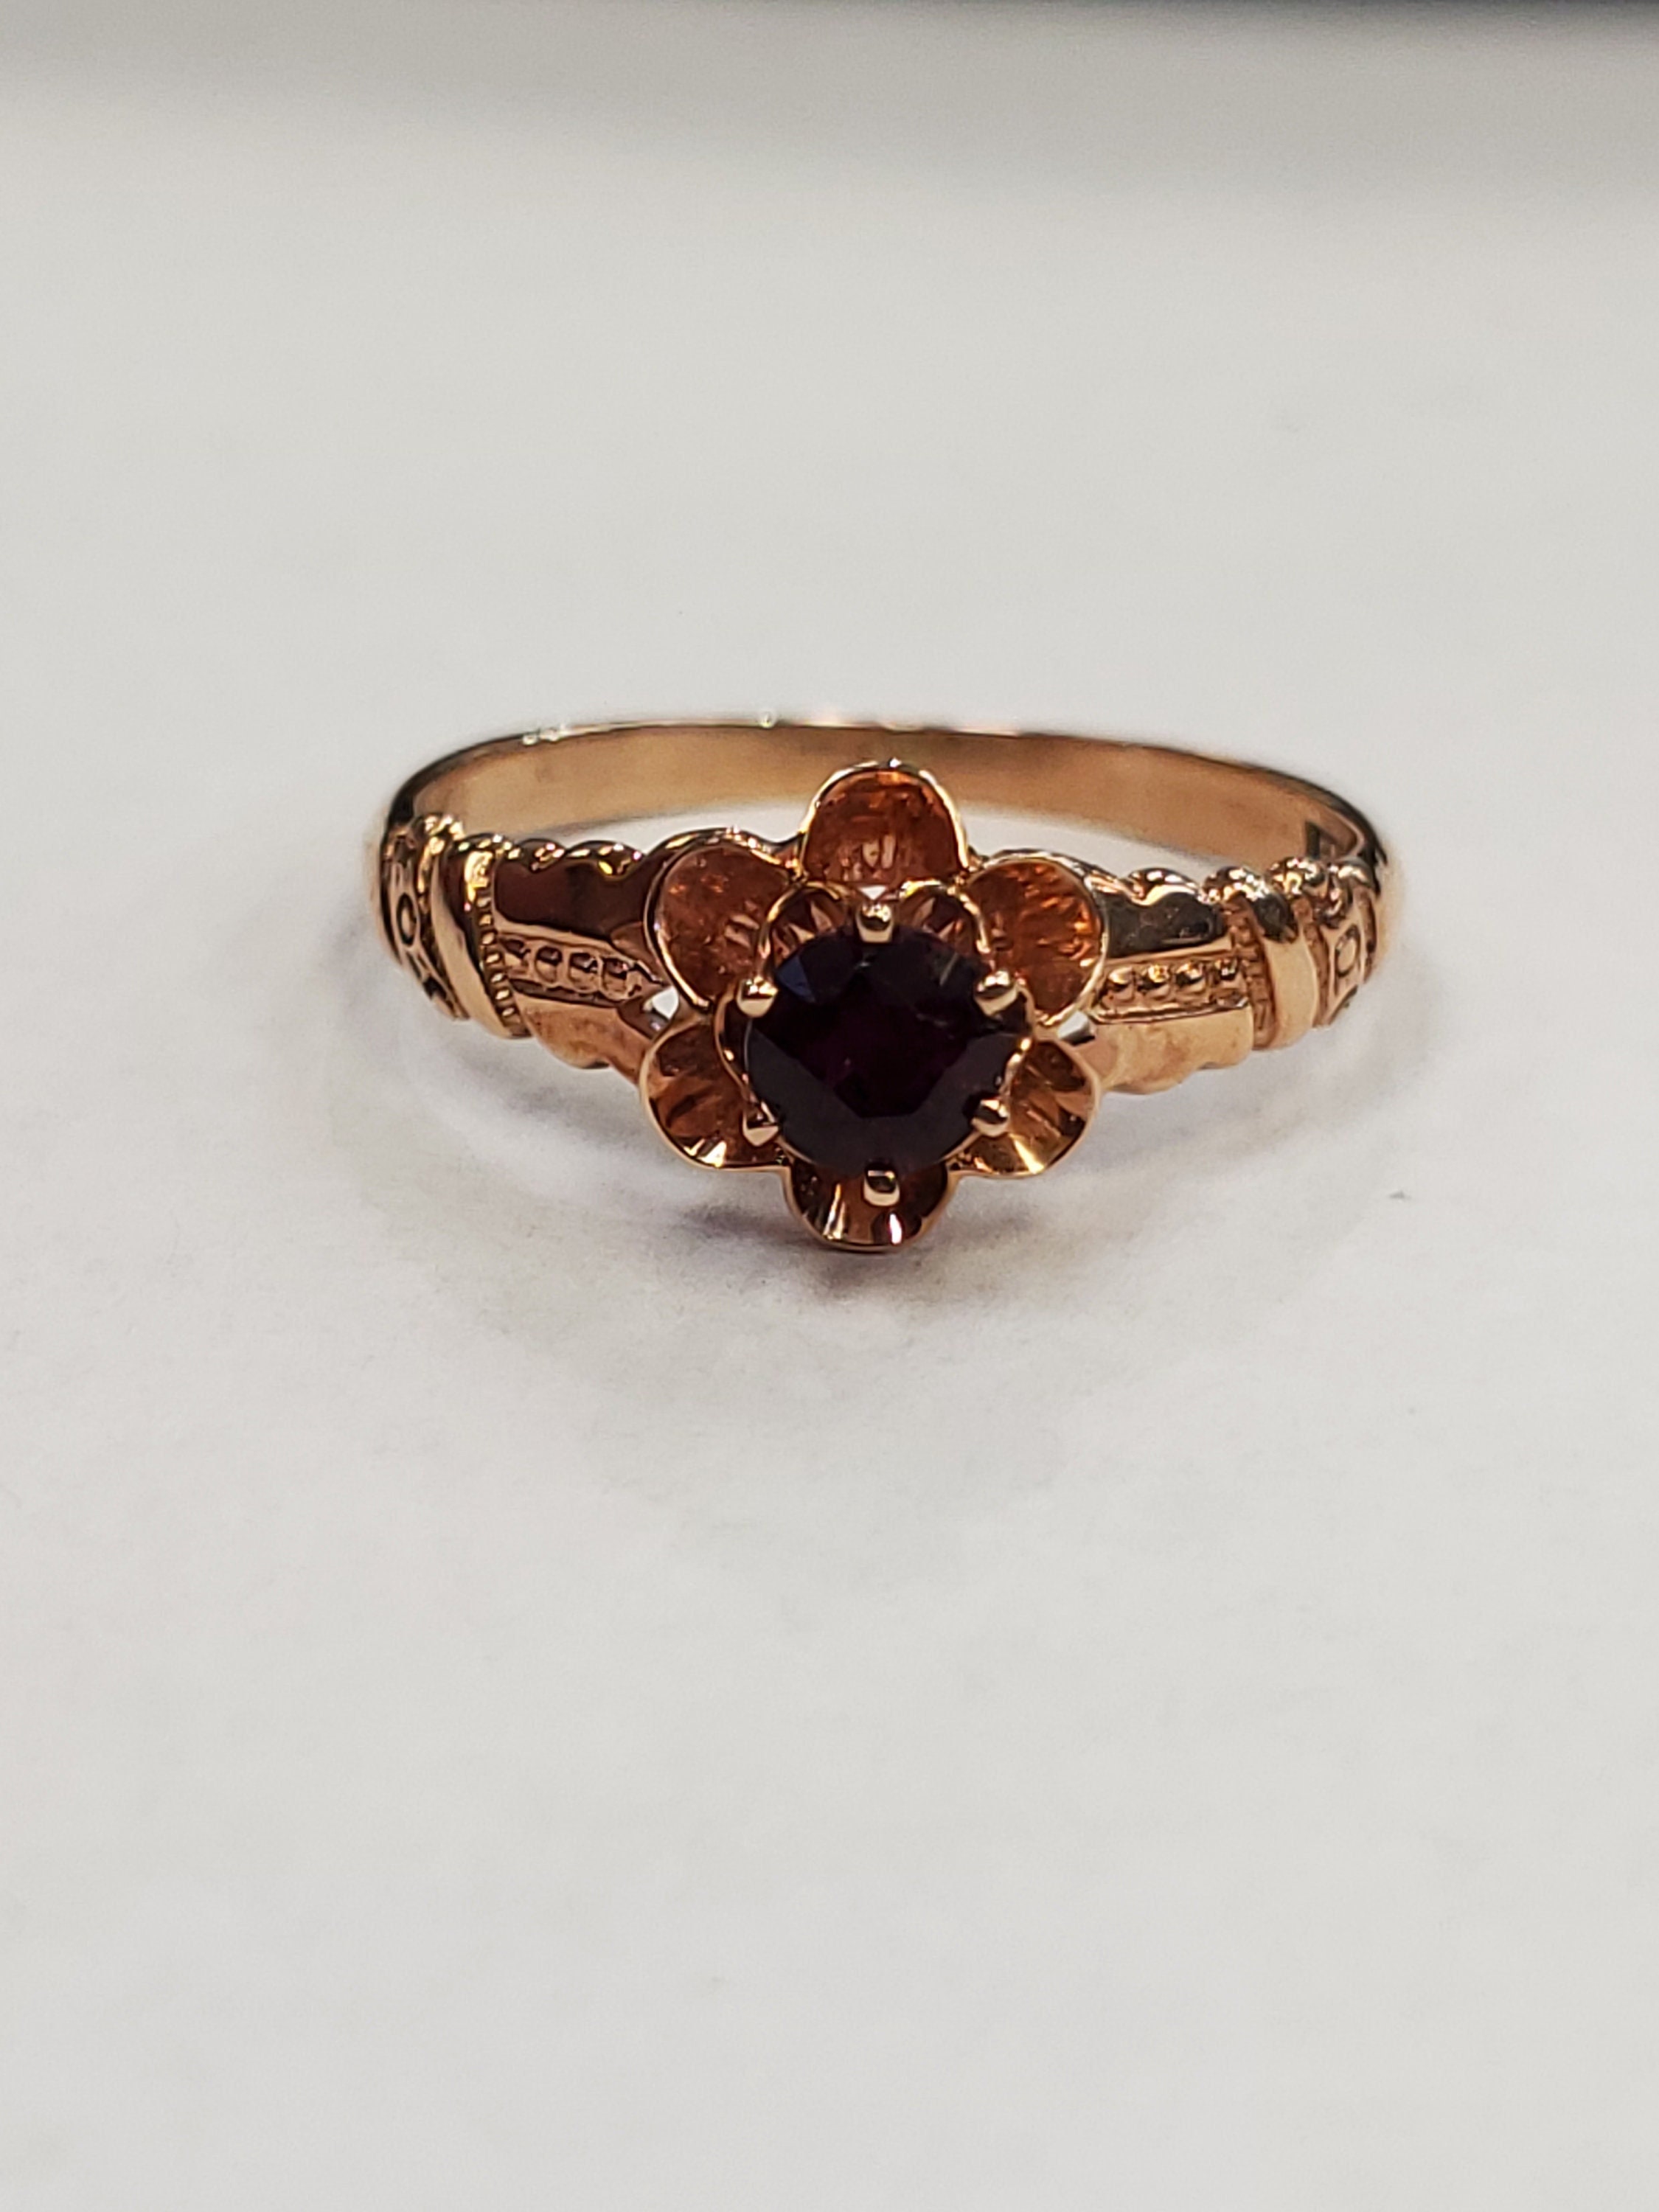 Product Image for Bernot & Heger antique garnet ring in 10k rose gold size 6.5